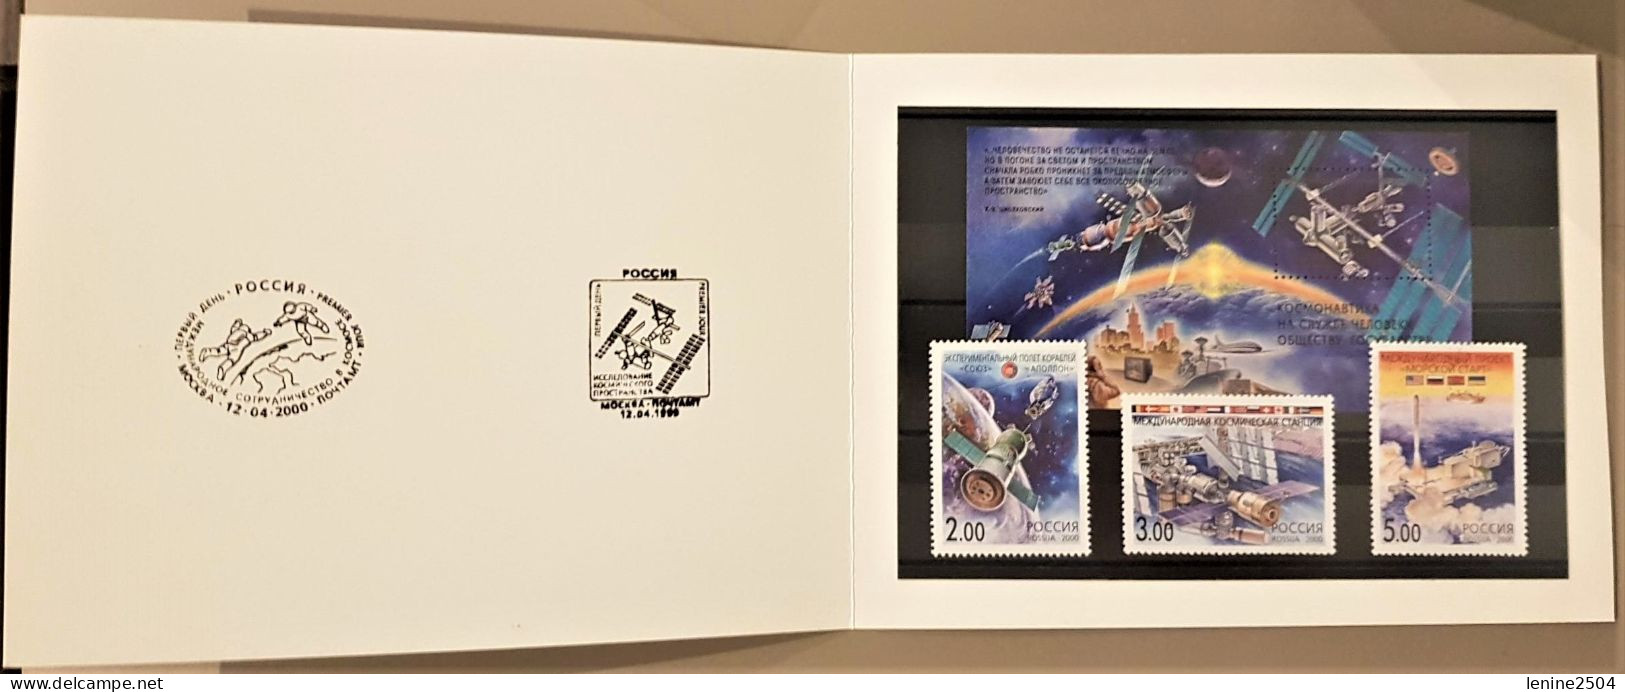 Russie 2000 Yvert N° 6460-6462 + Bloc 243 ** Emission 1er Jour Carnet Prestige Folder Booklet. Rare - Unused Stamps